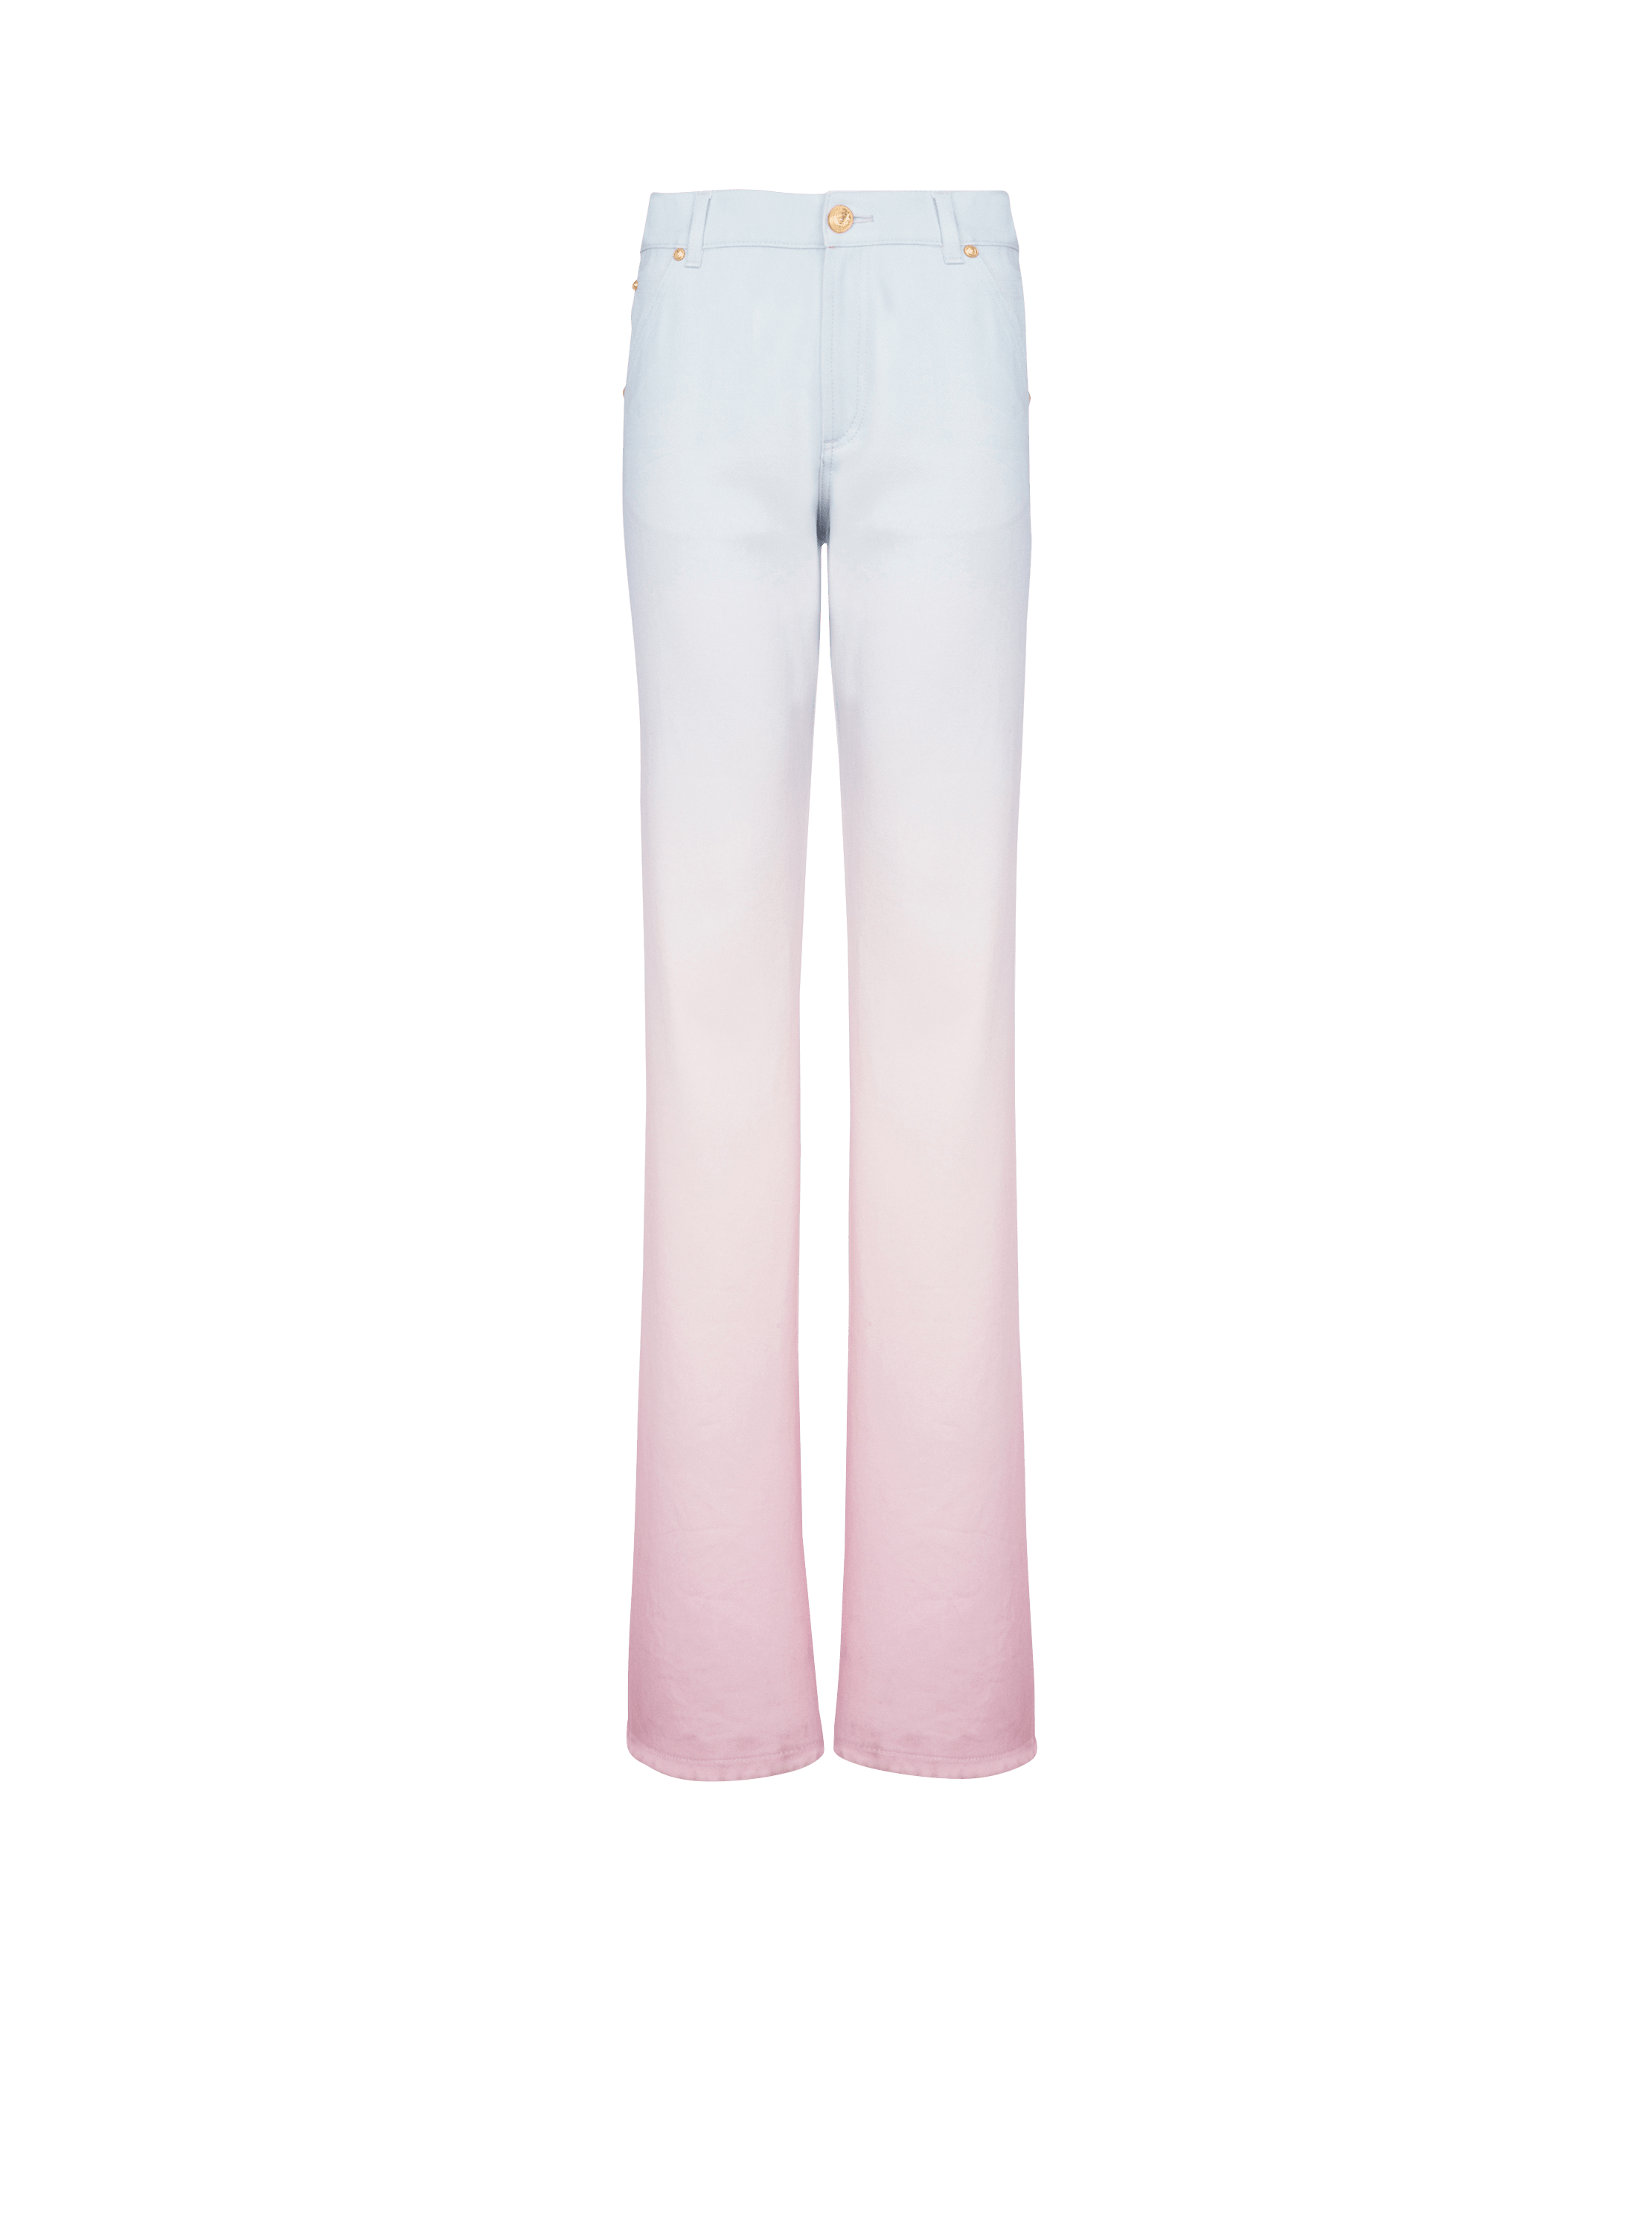 Balmain x Evian - Jeans grandes, multicolor, hi-res